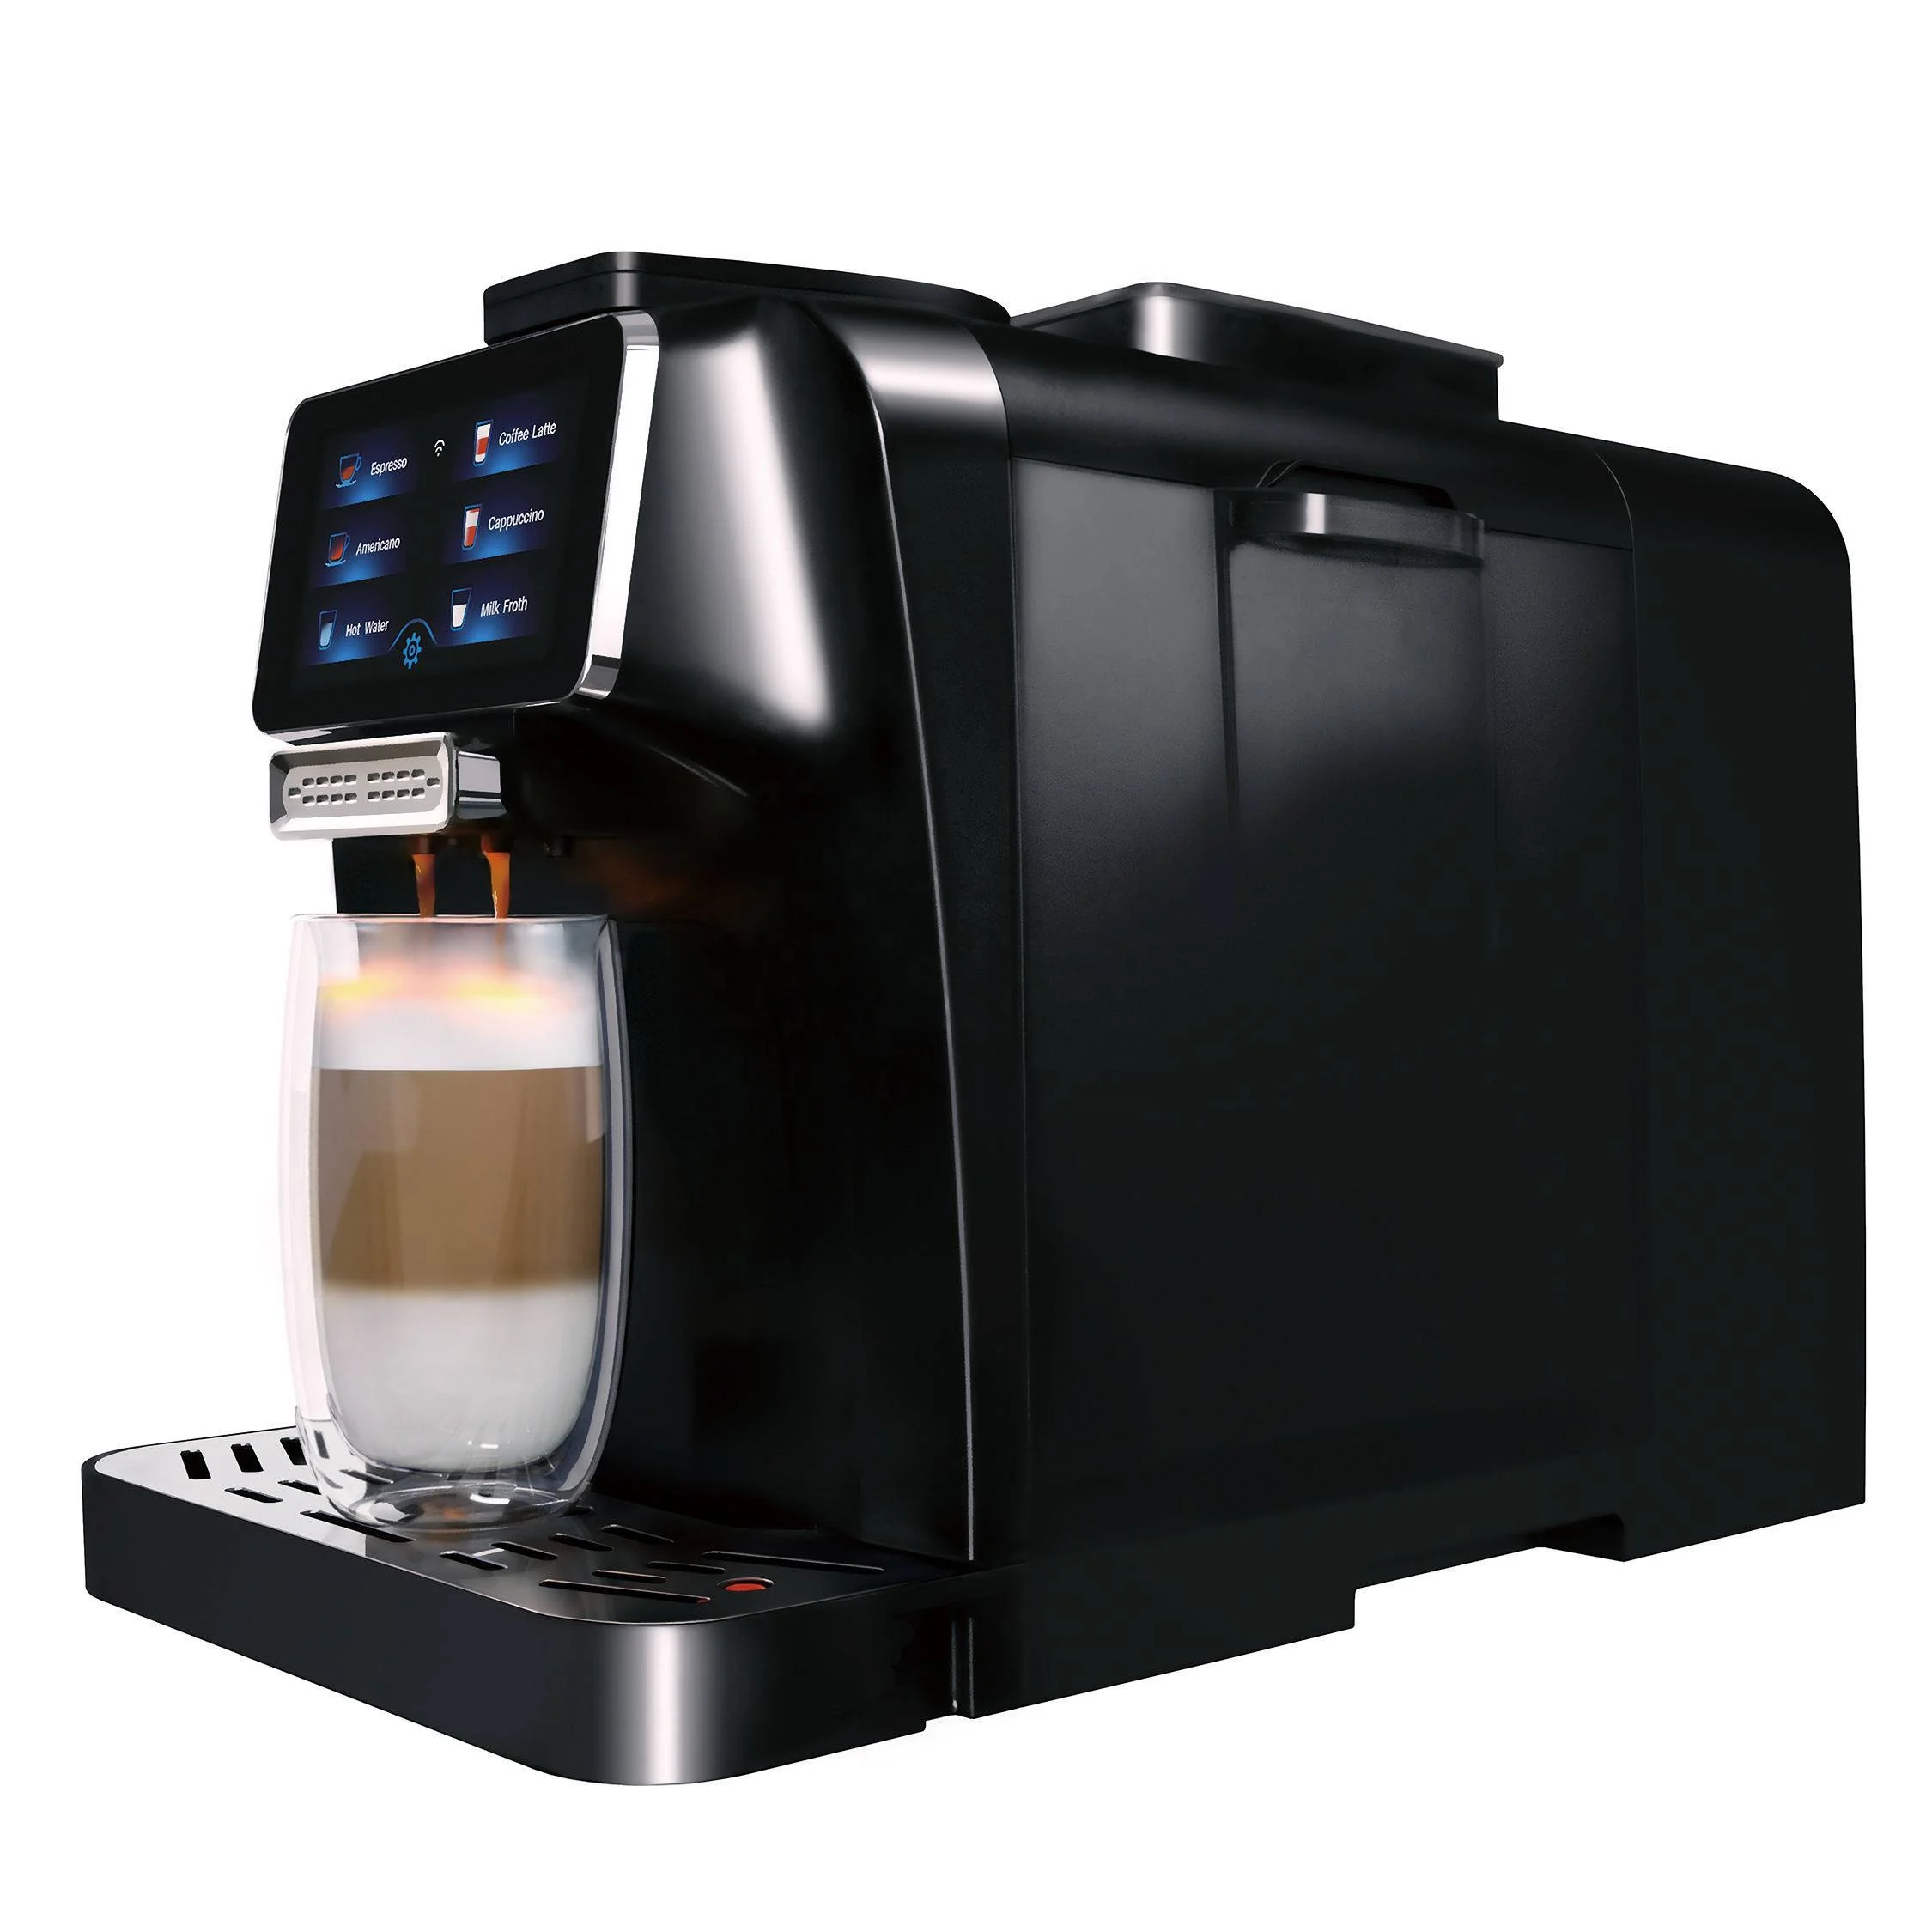 

Суперавтоматическая кофемашина для эспрессо cafee, полностью автоматическая кофемолка с сенсорным экраном и Wi-Fi